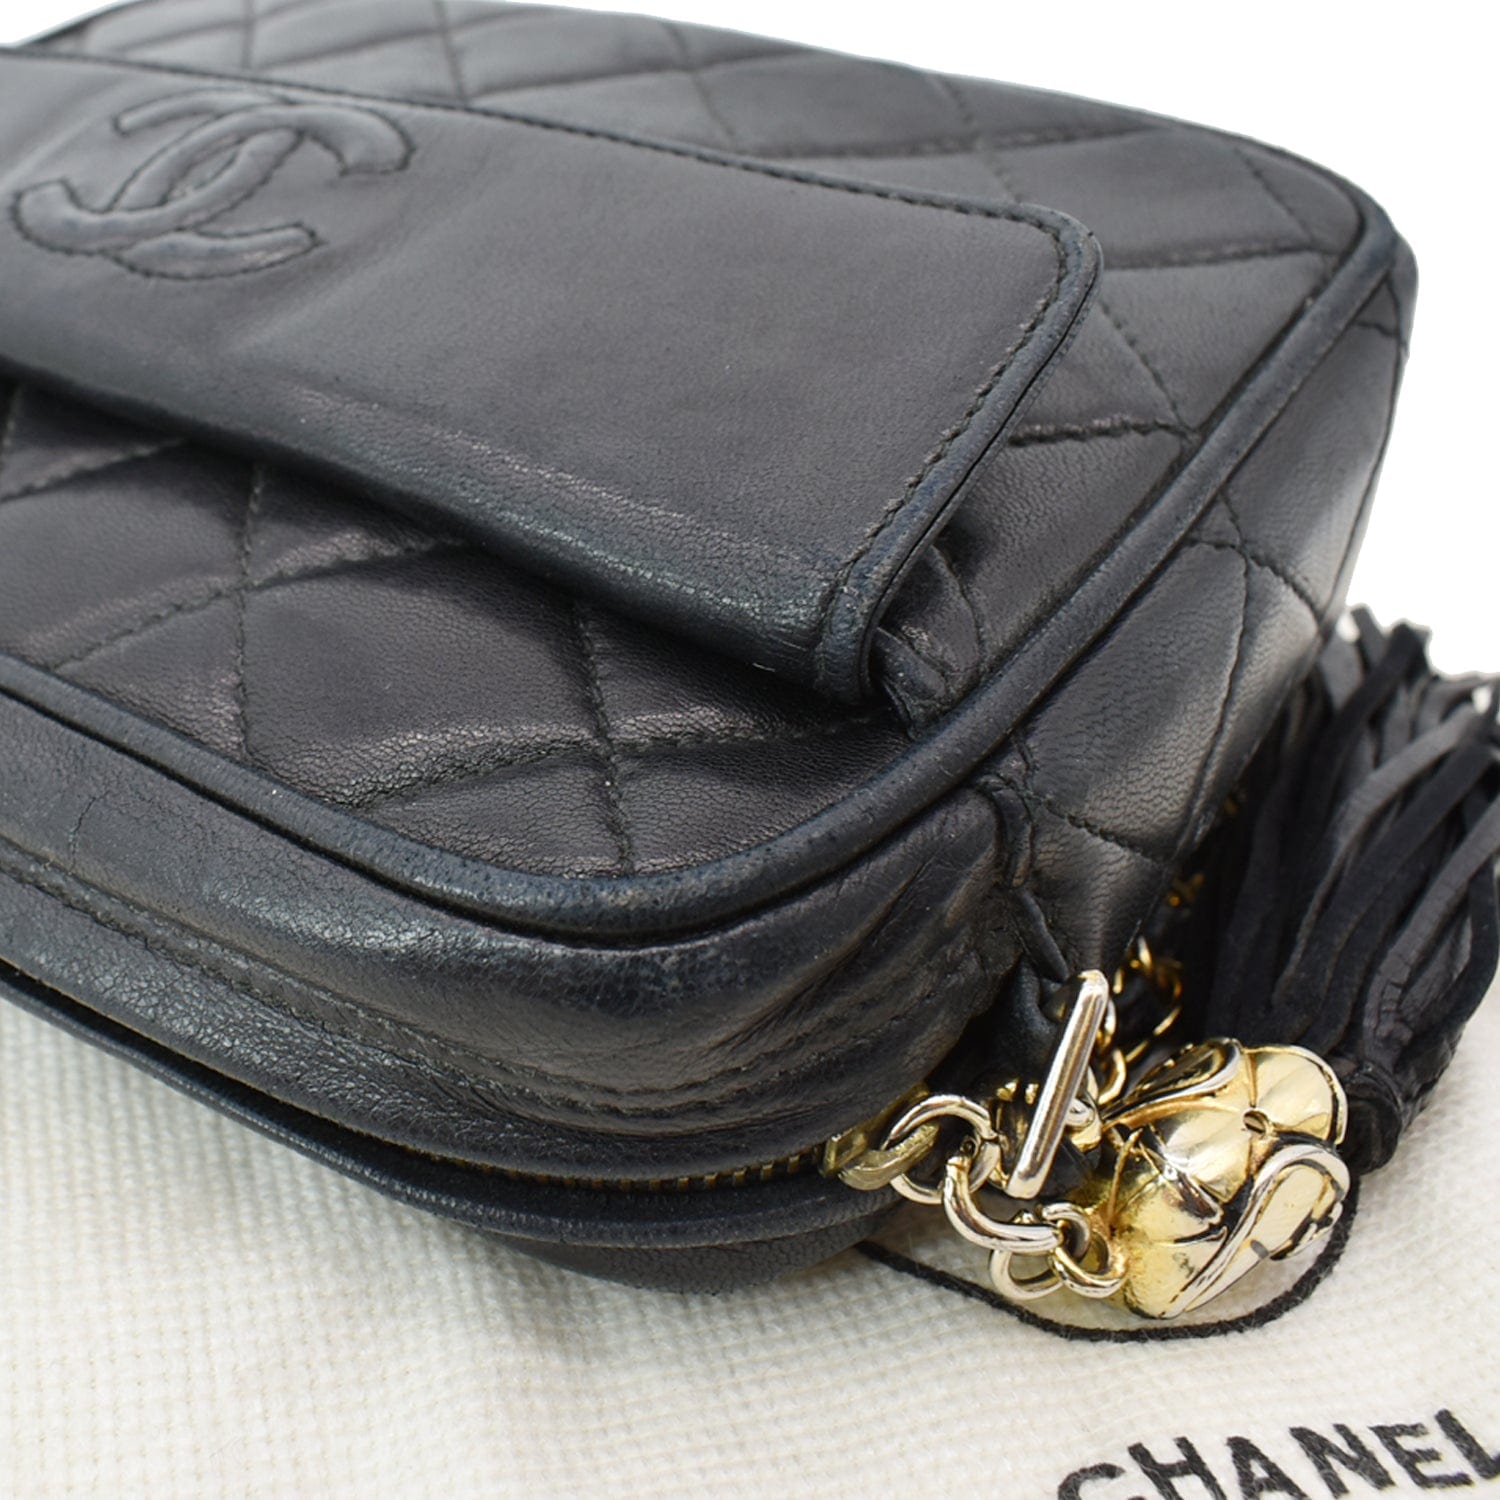 Chanel Black Quilted Suede Pocket Camera Bag Large Q6BAMQ2VK5000